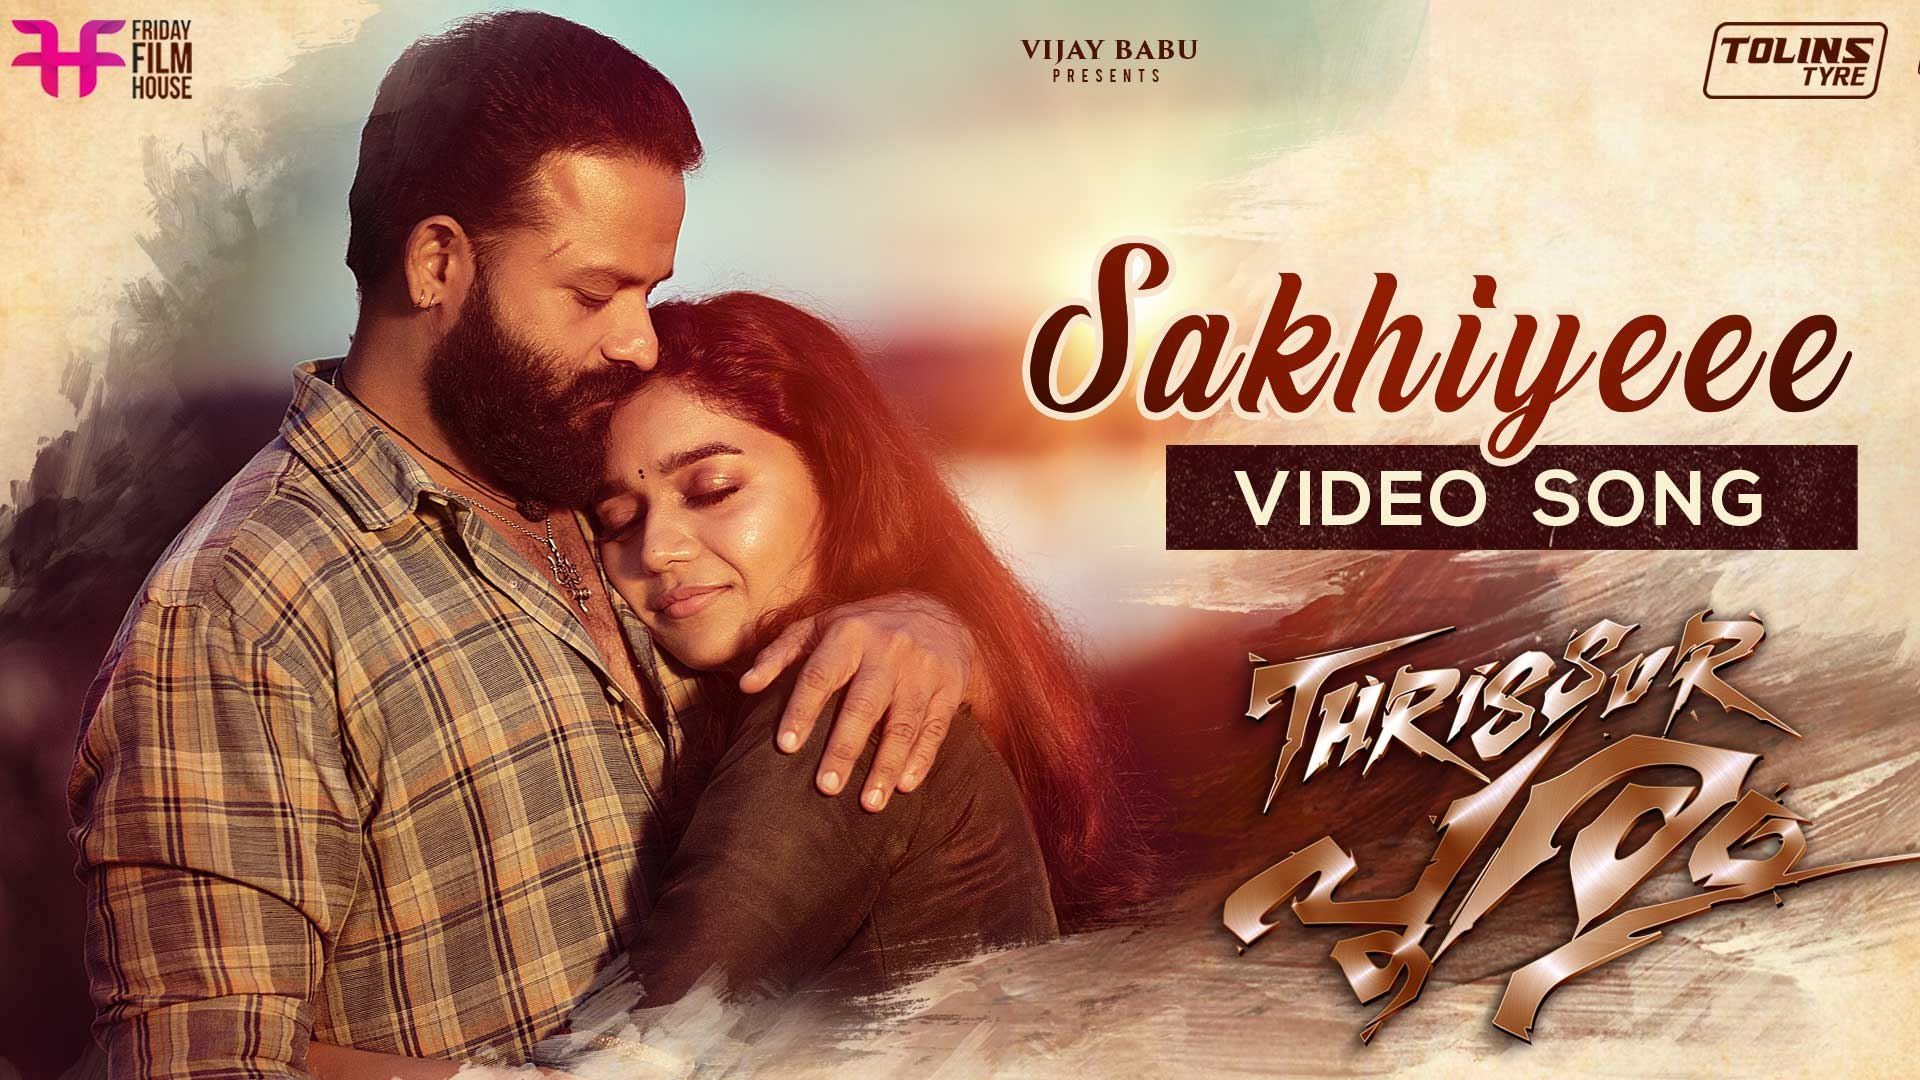 Sakhiyeee Video Song. Thrissur Pooram Movie. Jayasurya. Ratheesh Vega. Haricharan. December 20th